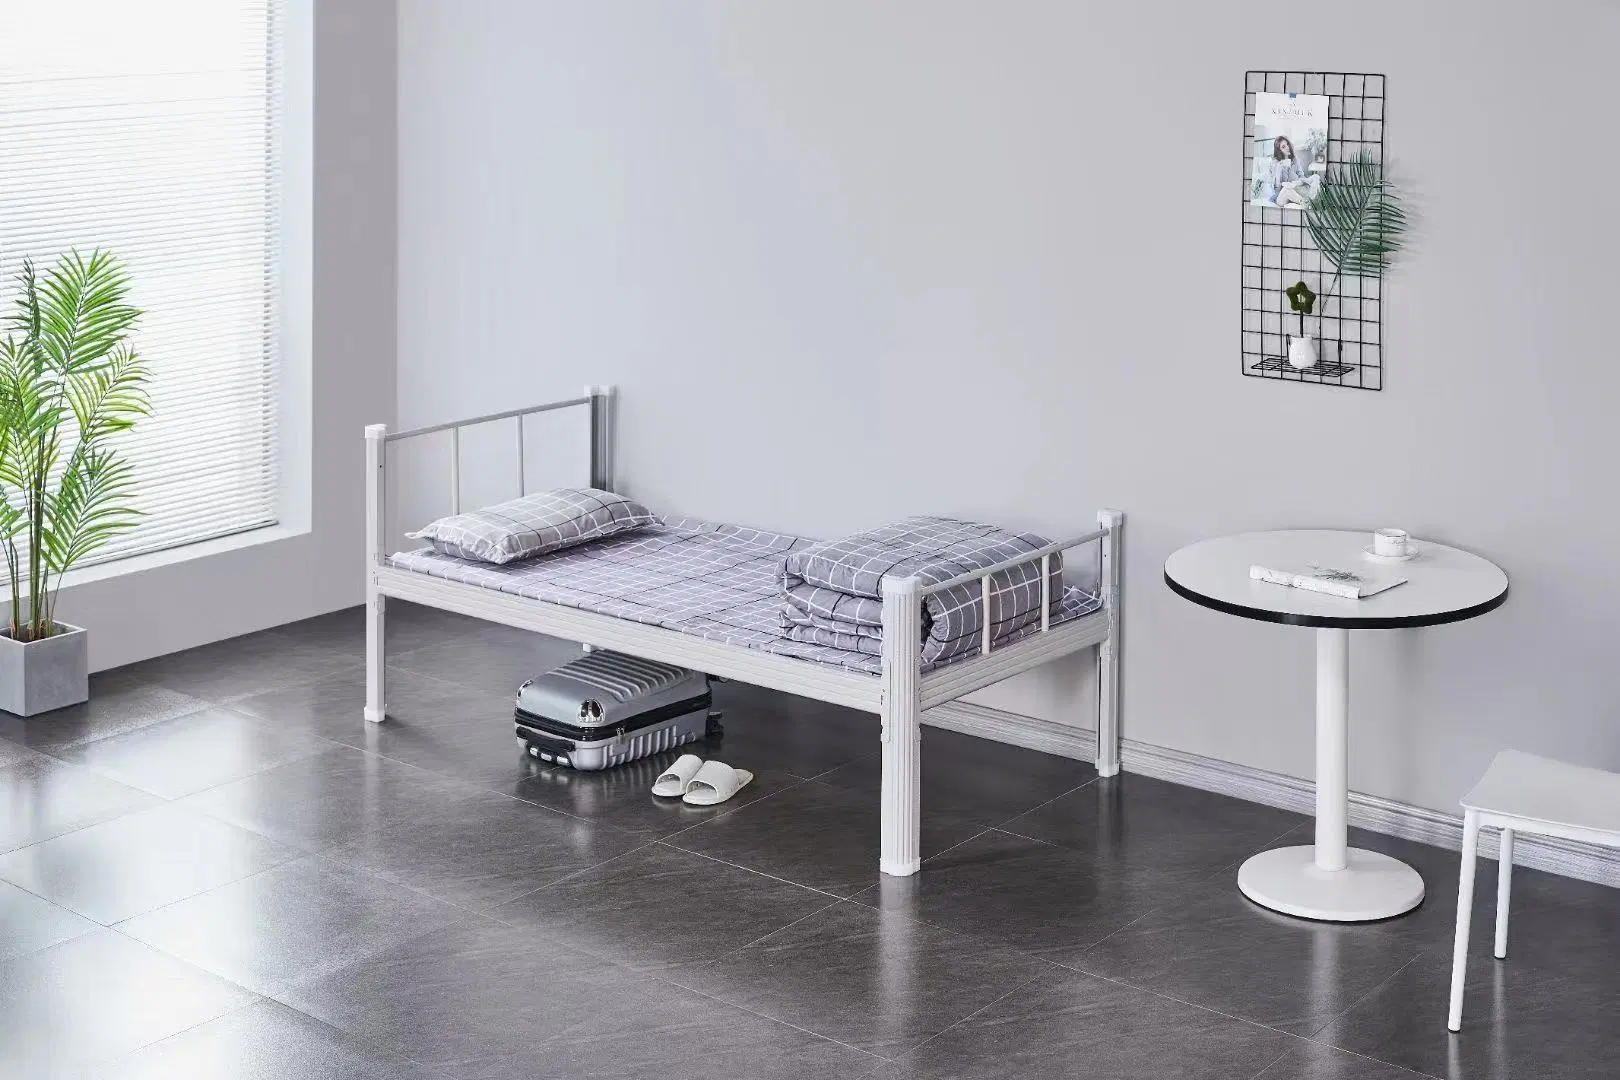 Quarto Metal moderno durável Beliche Metal branco estrutura da cama